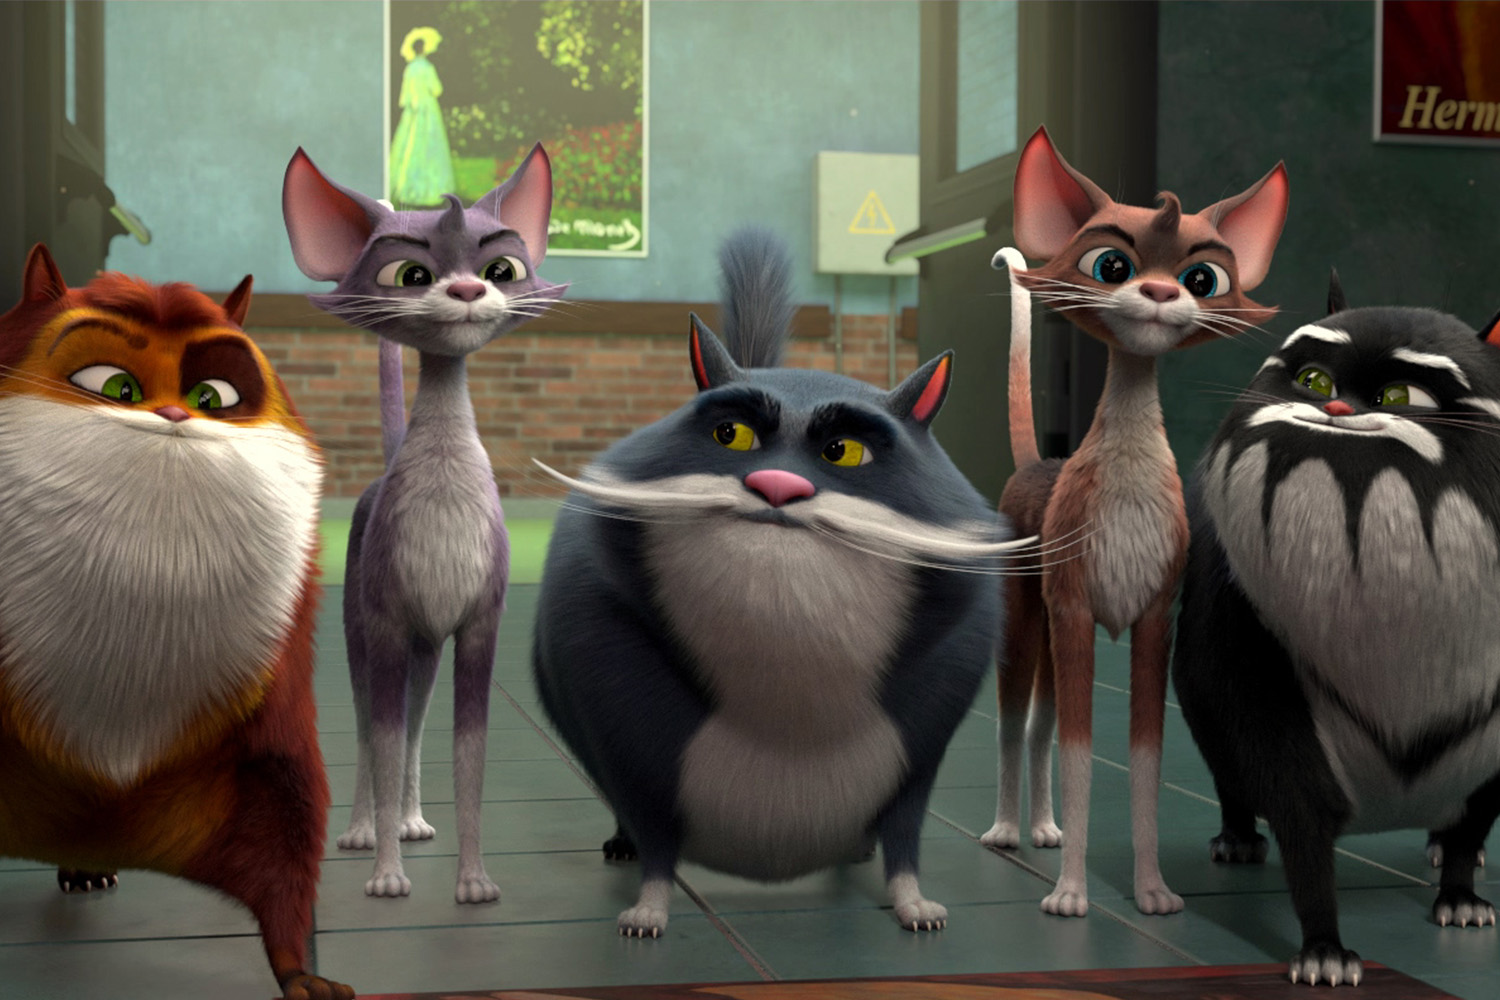 Mèo Siêu Quậy Ở Viện Bảo Tàng: Phim hoạt hình cho kẻ yêu mèo